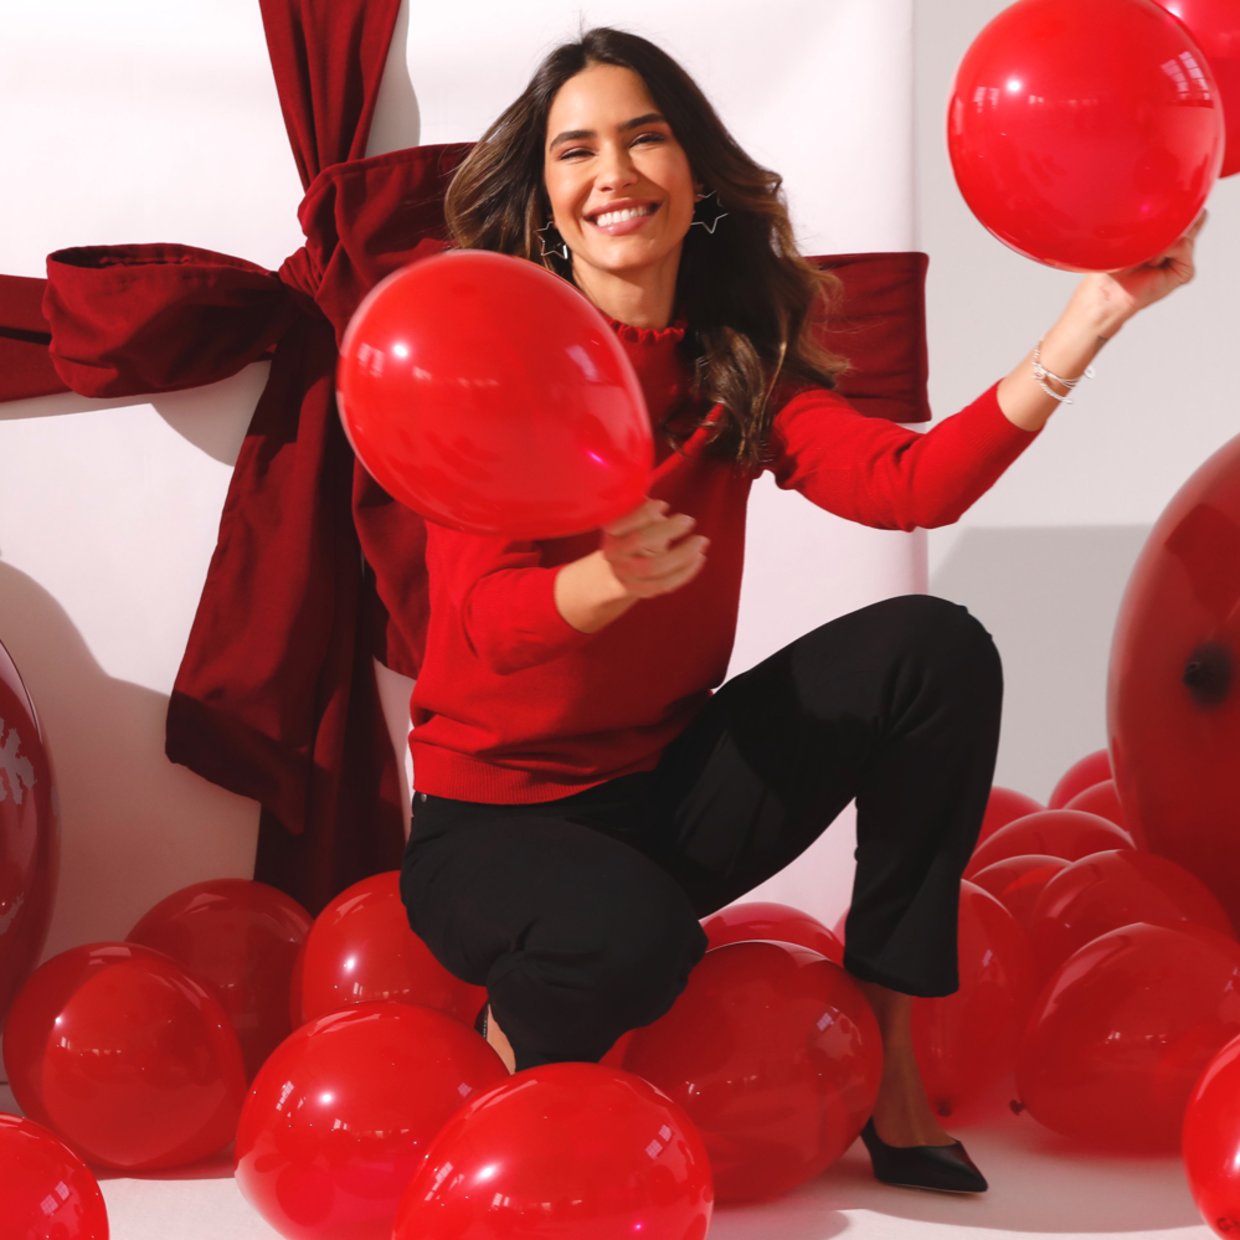 Frau mit rotem Oberteil vor Geschenkpaket mit roten Luftballons in der Hand